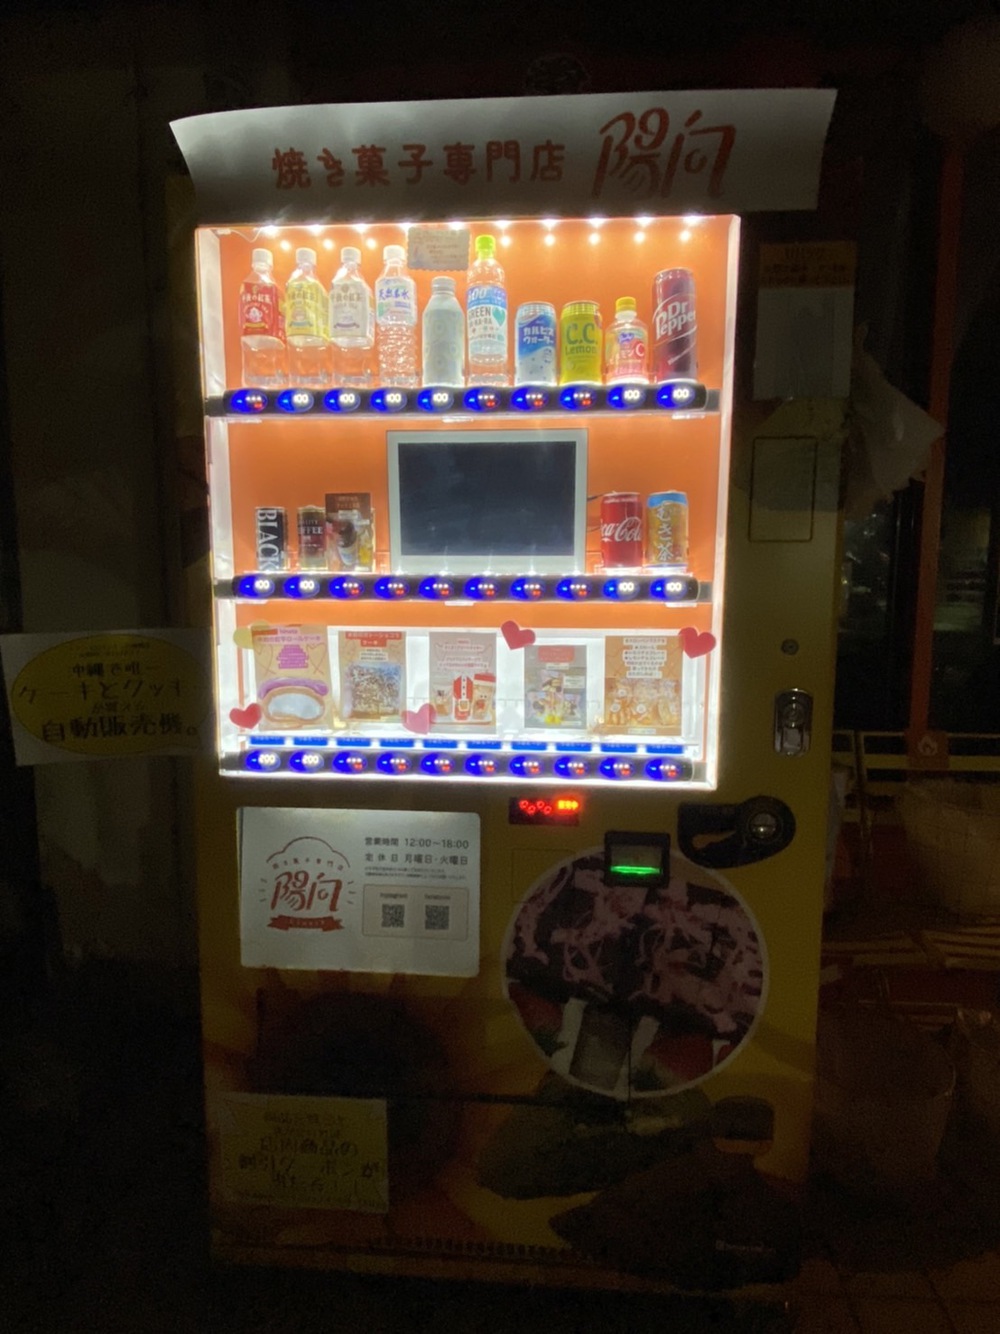 ナニコレ沖縄面白い 珍しい自販機 40回目 沖縄唯一ケーキとクッキーが買える自動販売機 沖縄市 ファミコン沖縄 自販機 食べ歩き